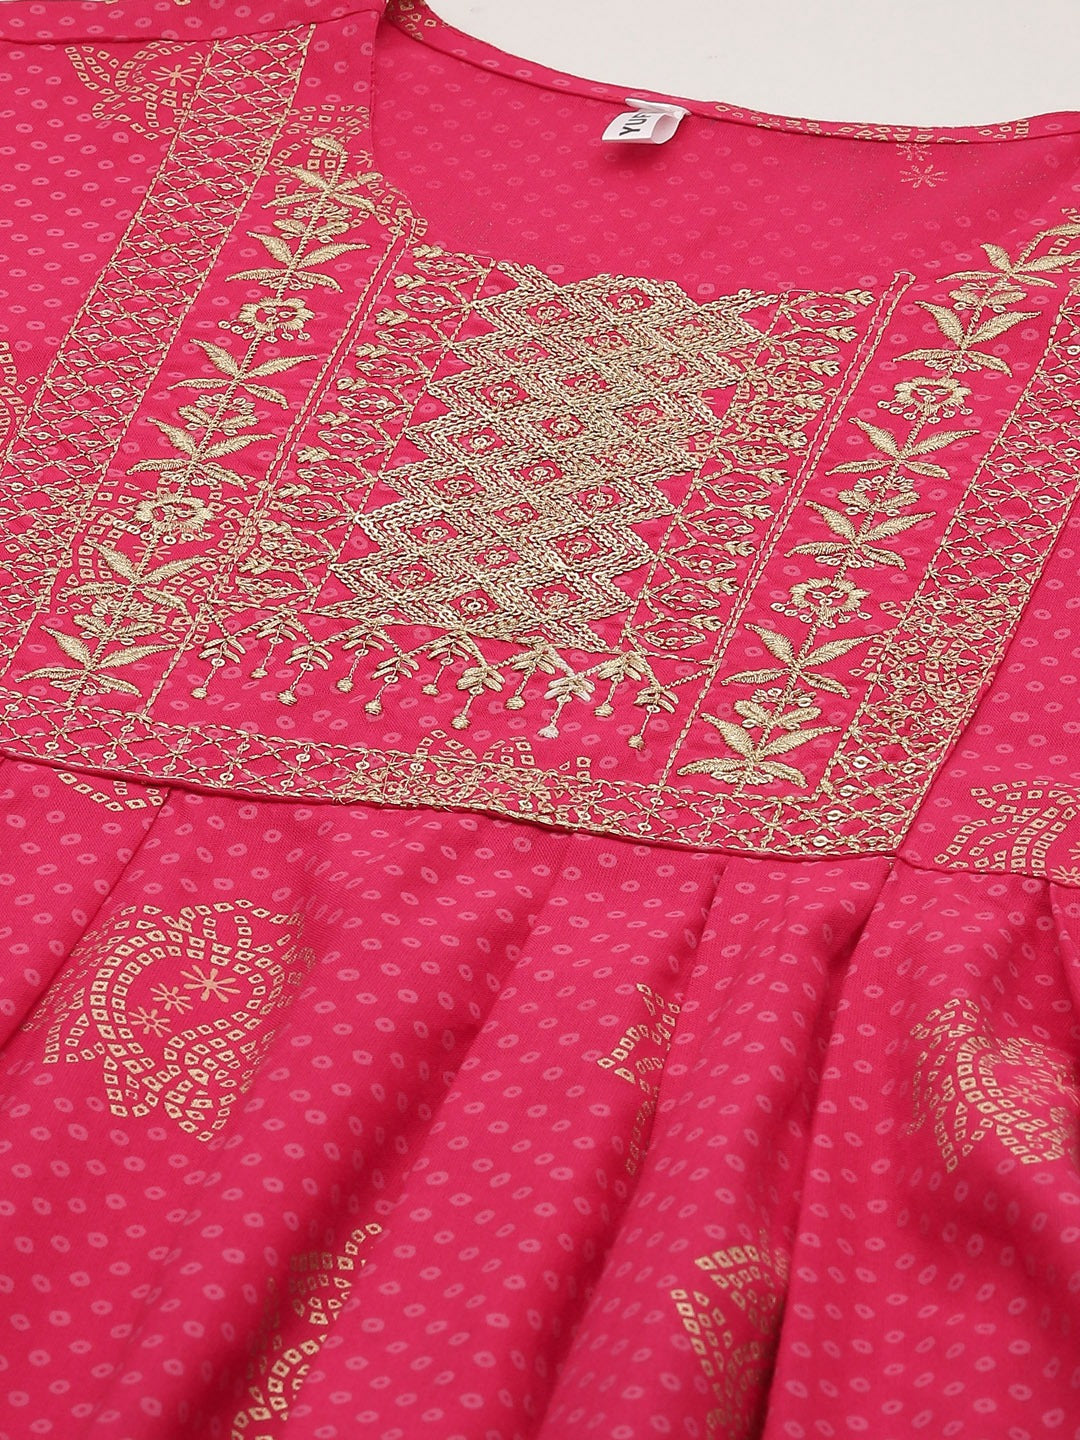 Pink Bandhani Print Dupatta Set-Yufta Store-9968SKDPKS